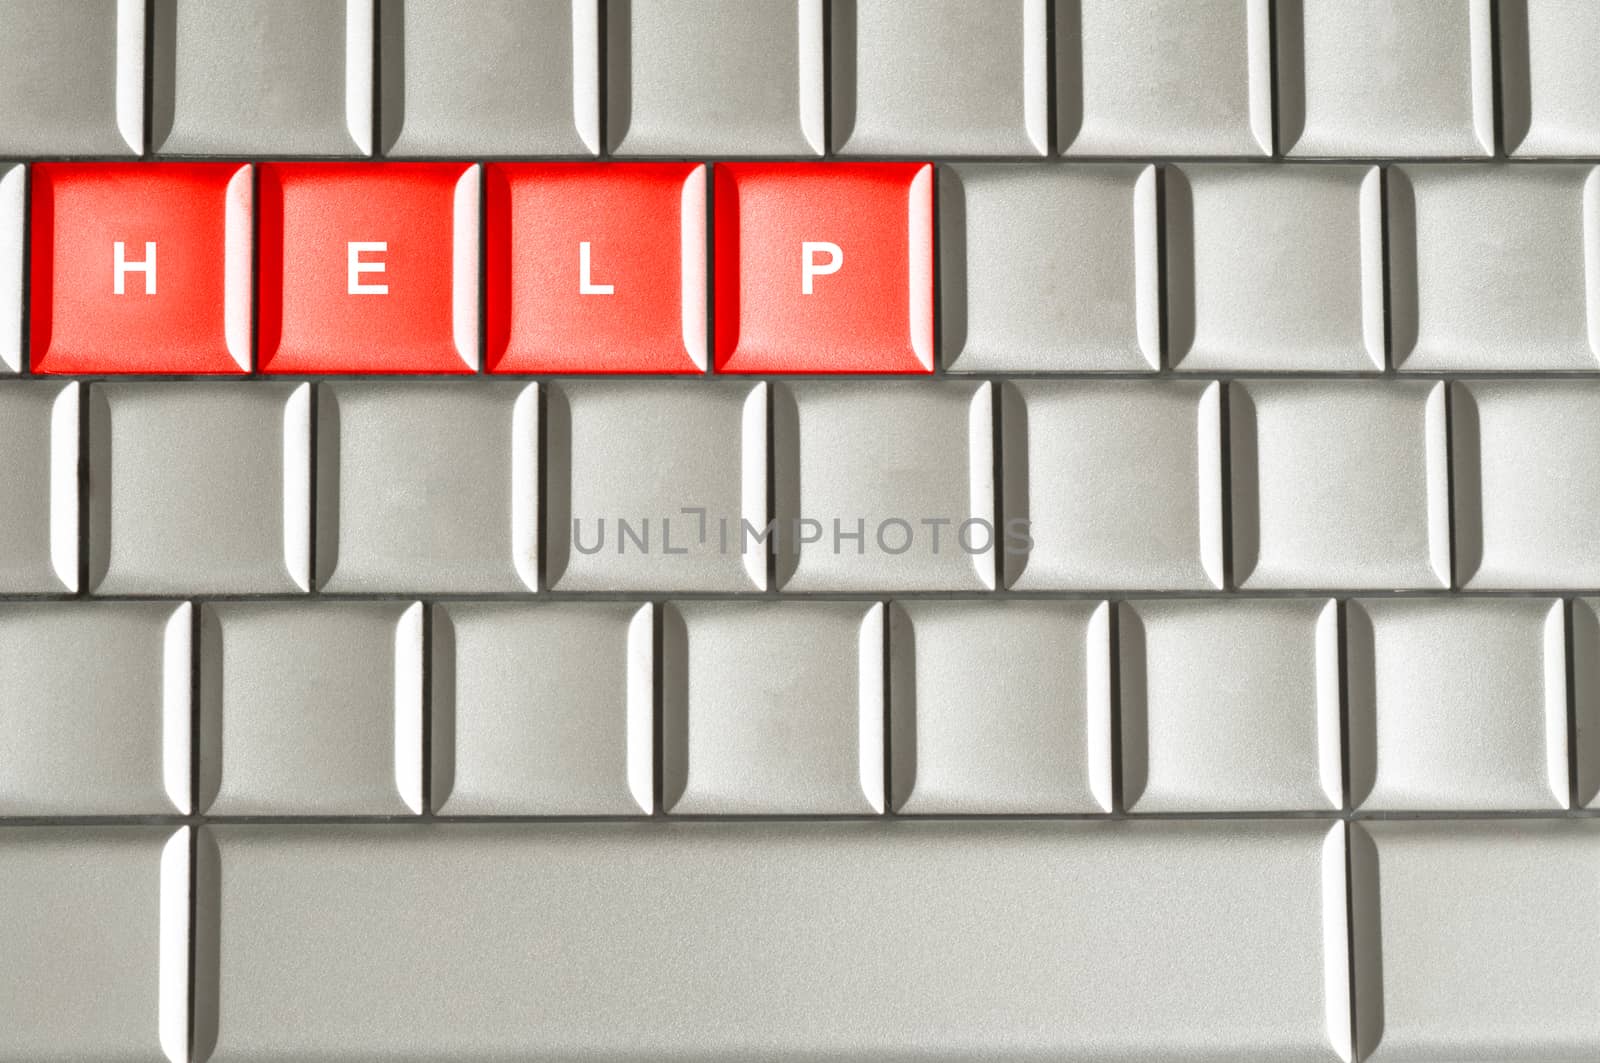 Help spelled on a keyboard by daoleduc